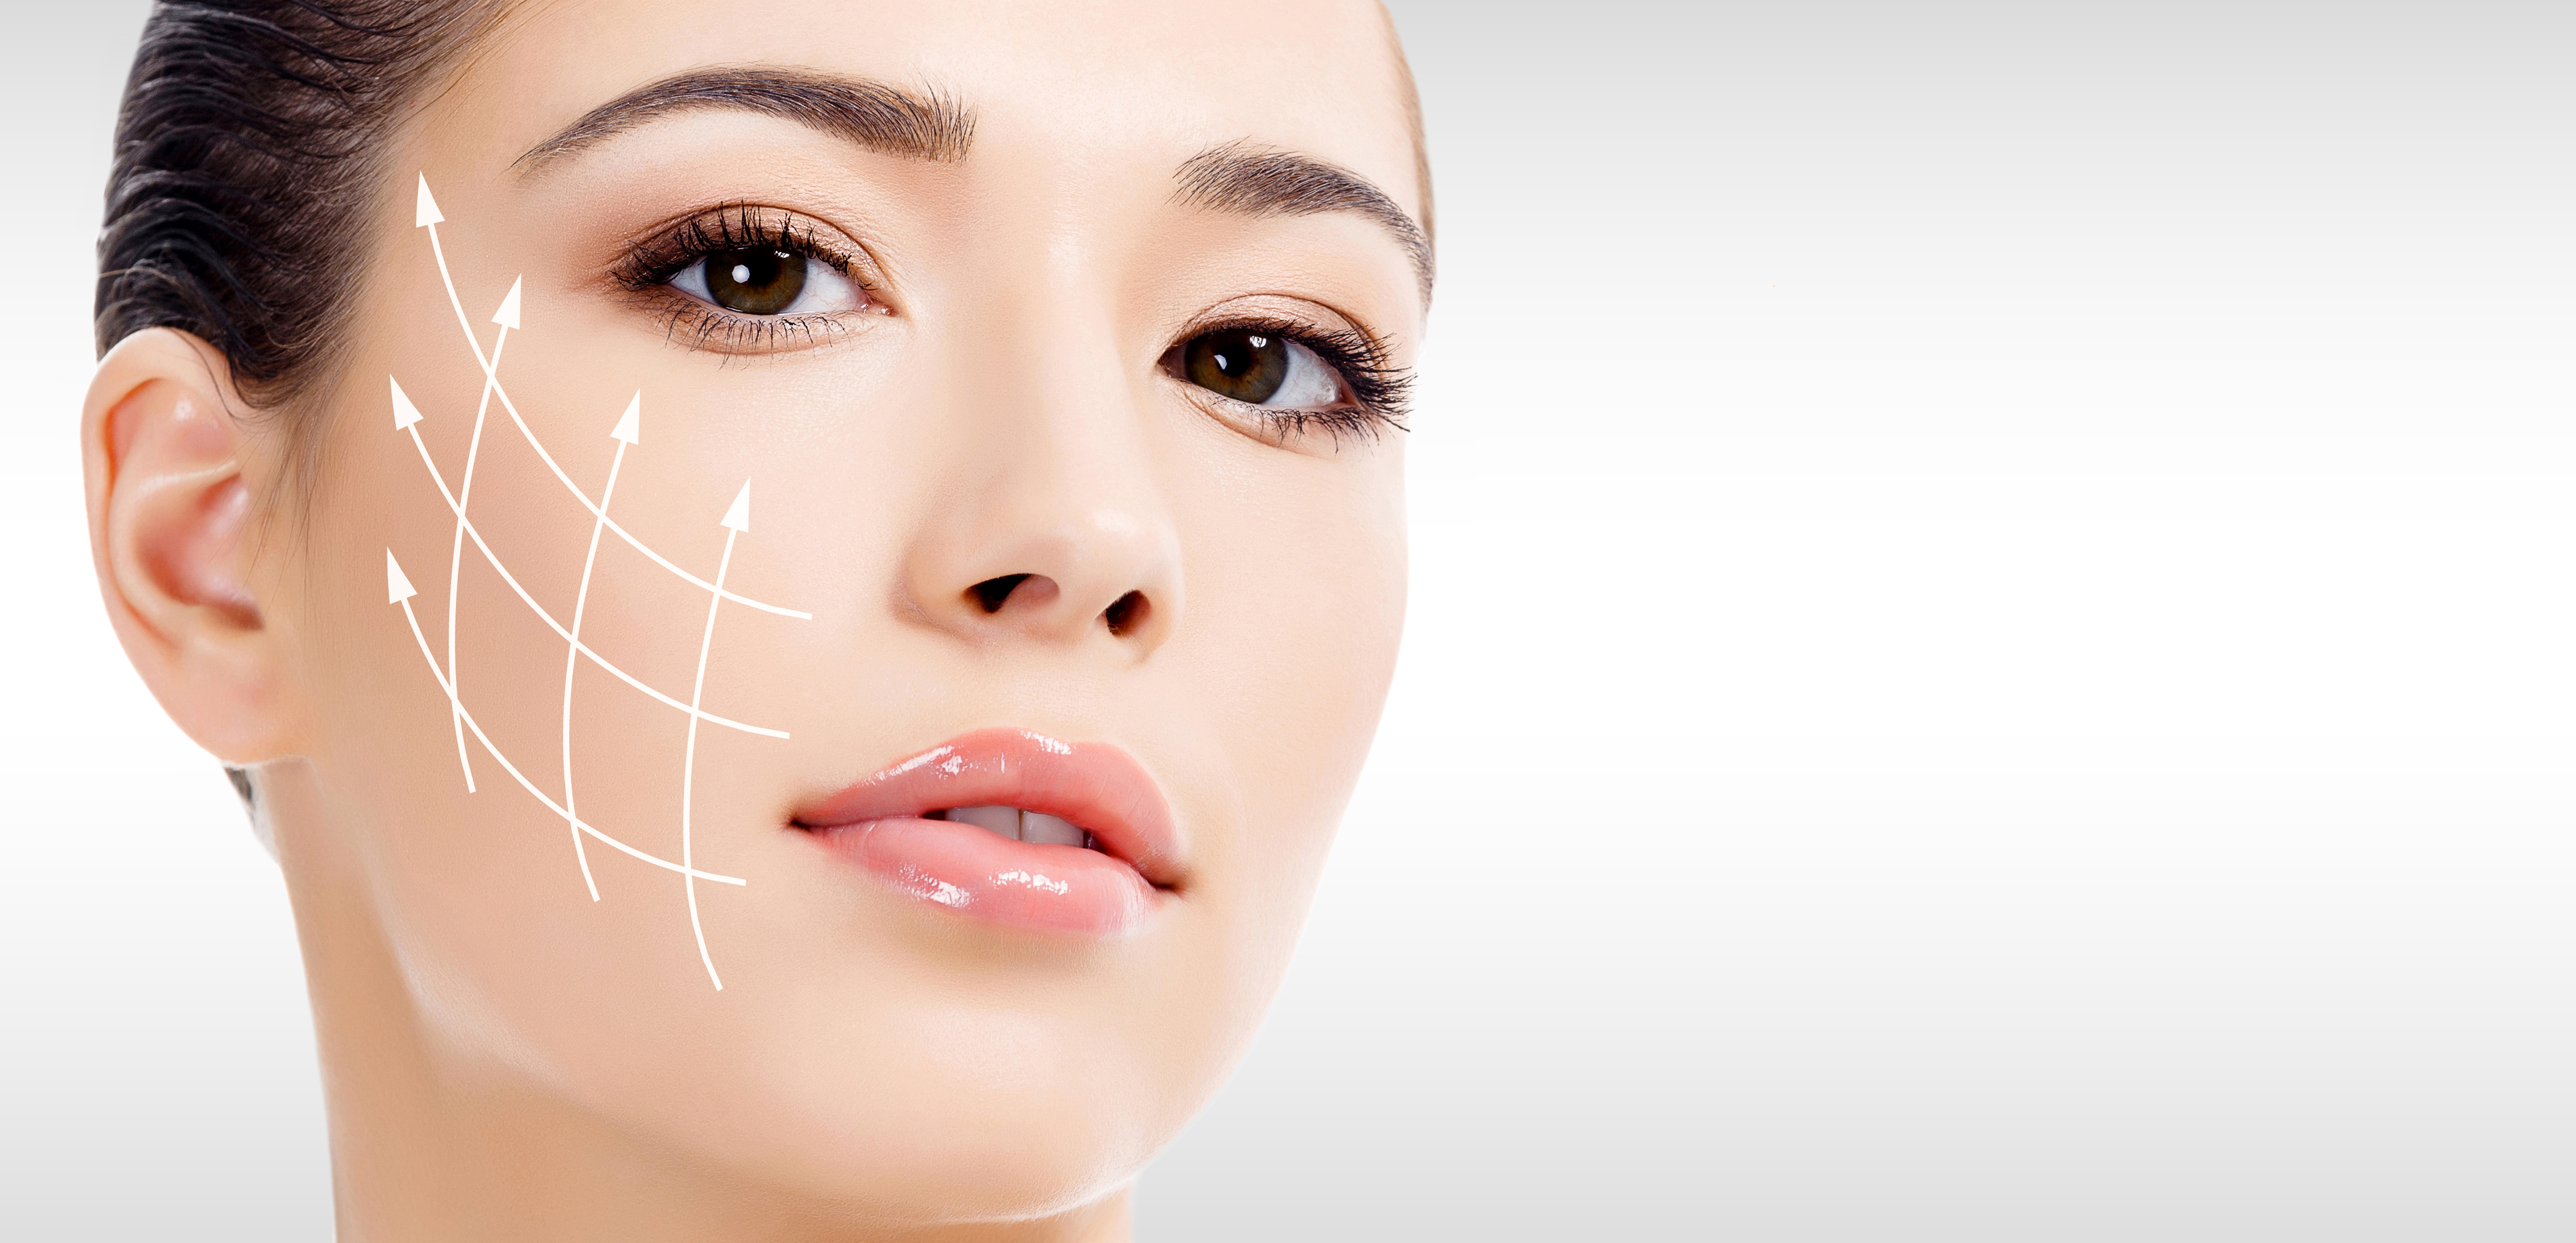 Tratamiento anti-arrugas y rejuvenecimiento facial